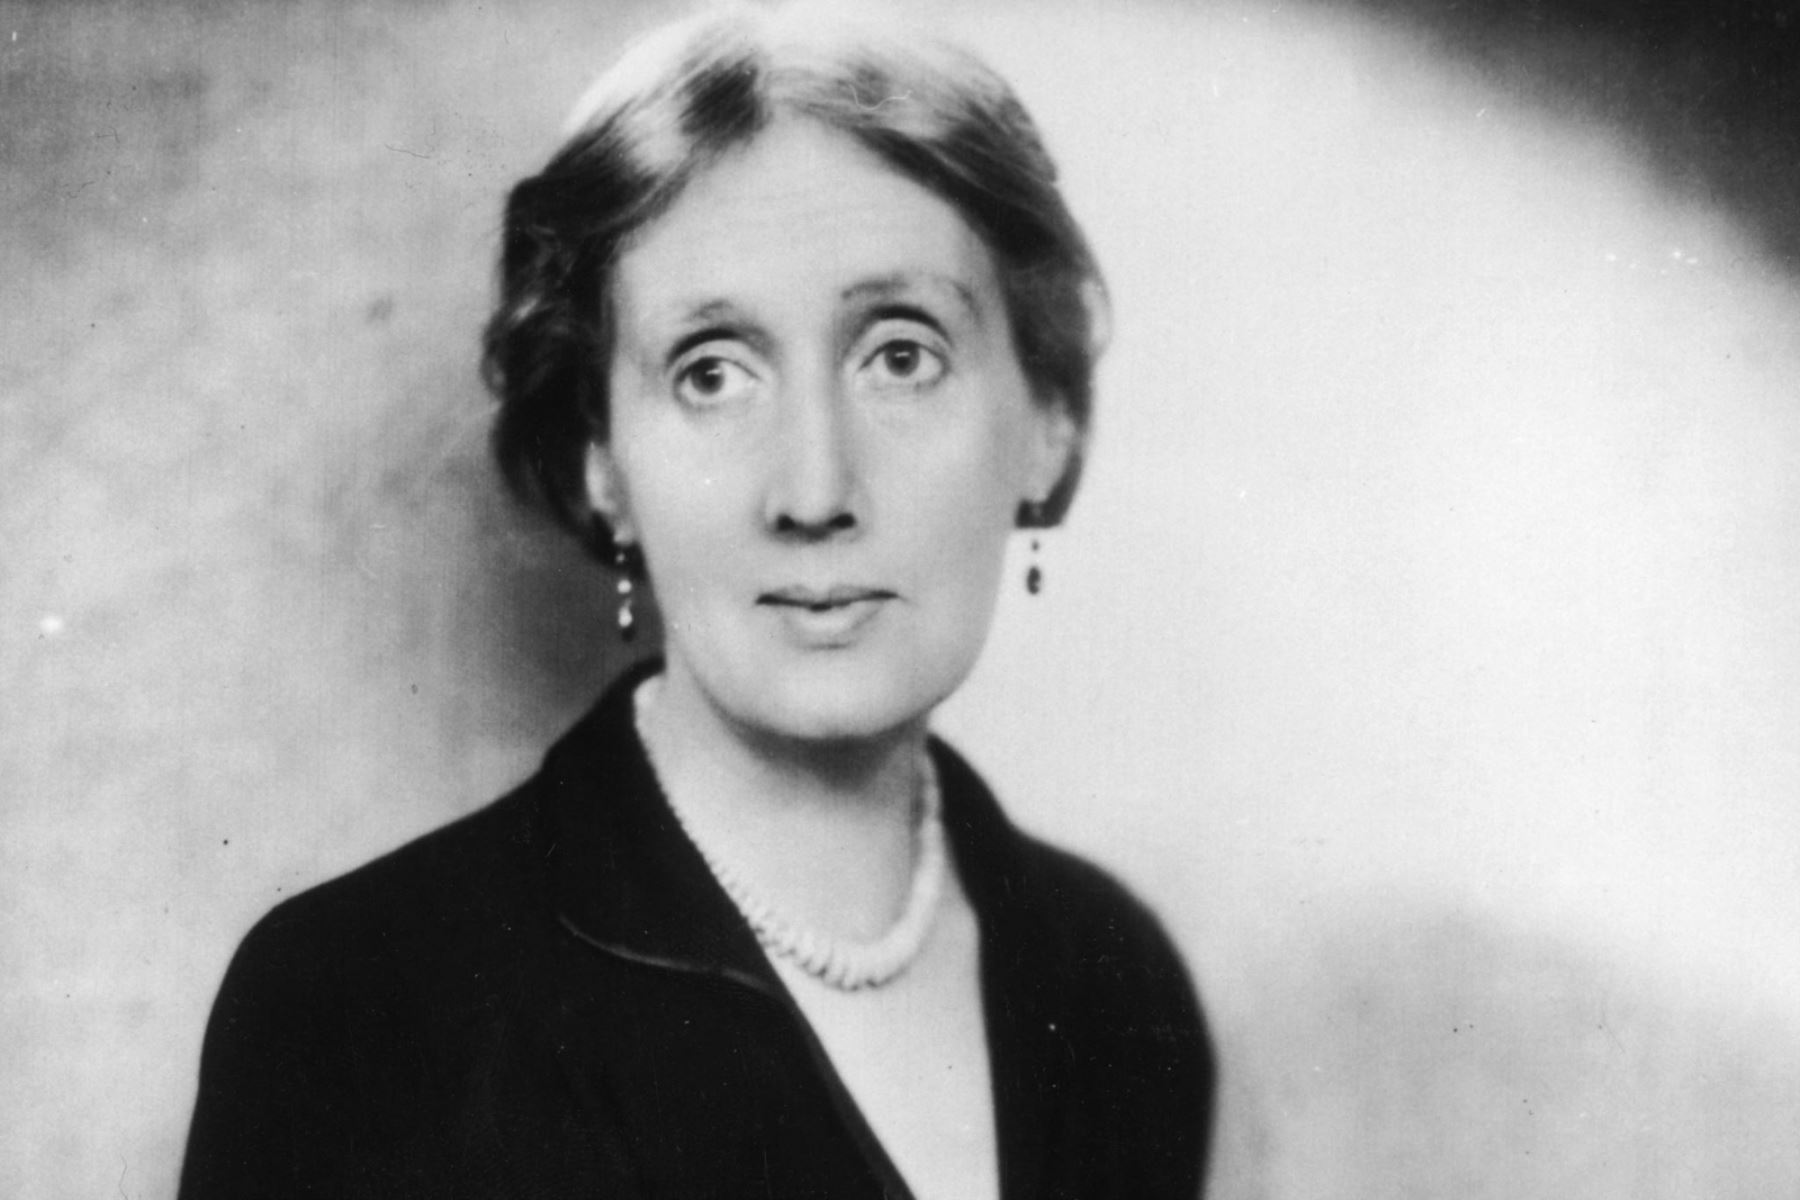 Virginia Woolf (Escritora).
“No deseo que las mujeres tengan poder sobre los hombres, sino sobre ellas mismas”. Foto: De la redacción de razacero.